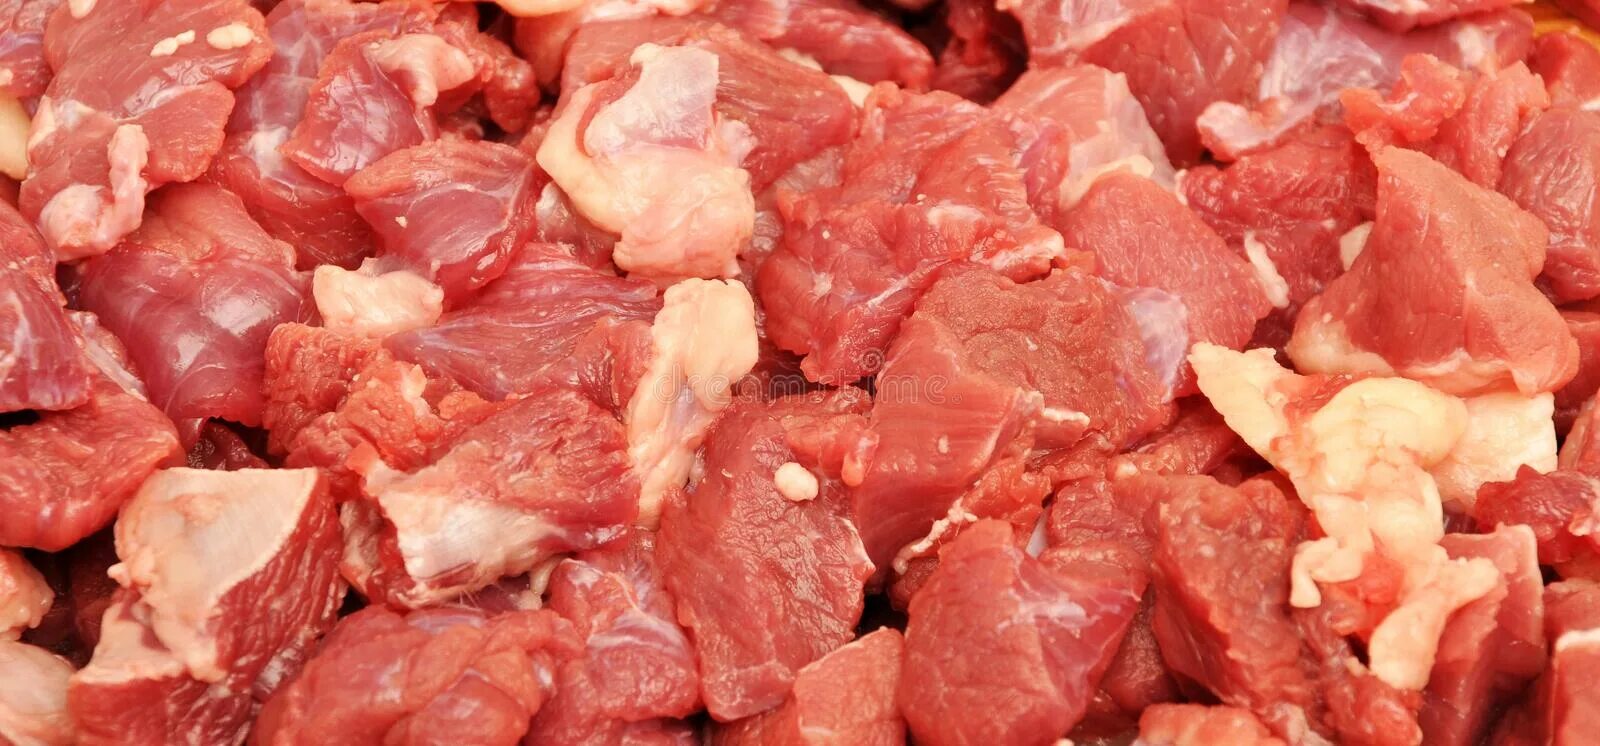 Сонник сырое мясо без крови. Много сырого мяса.